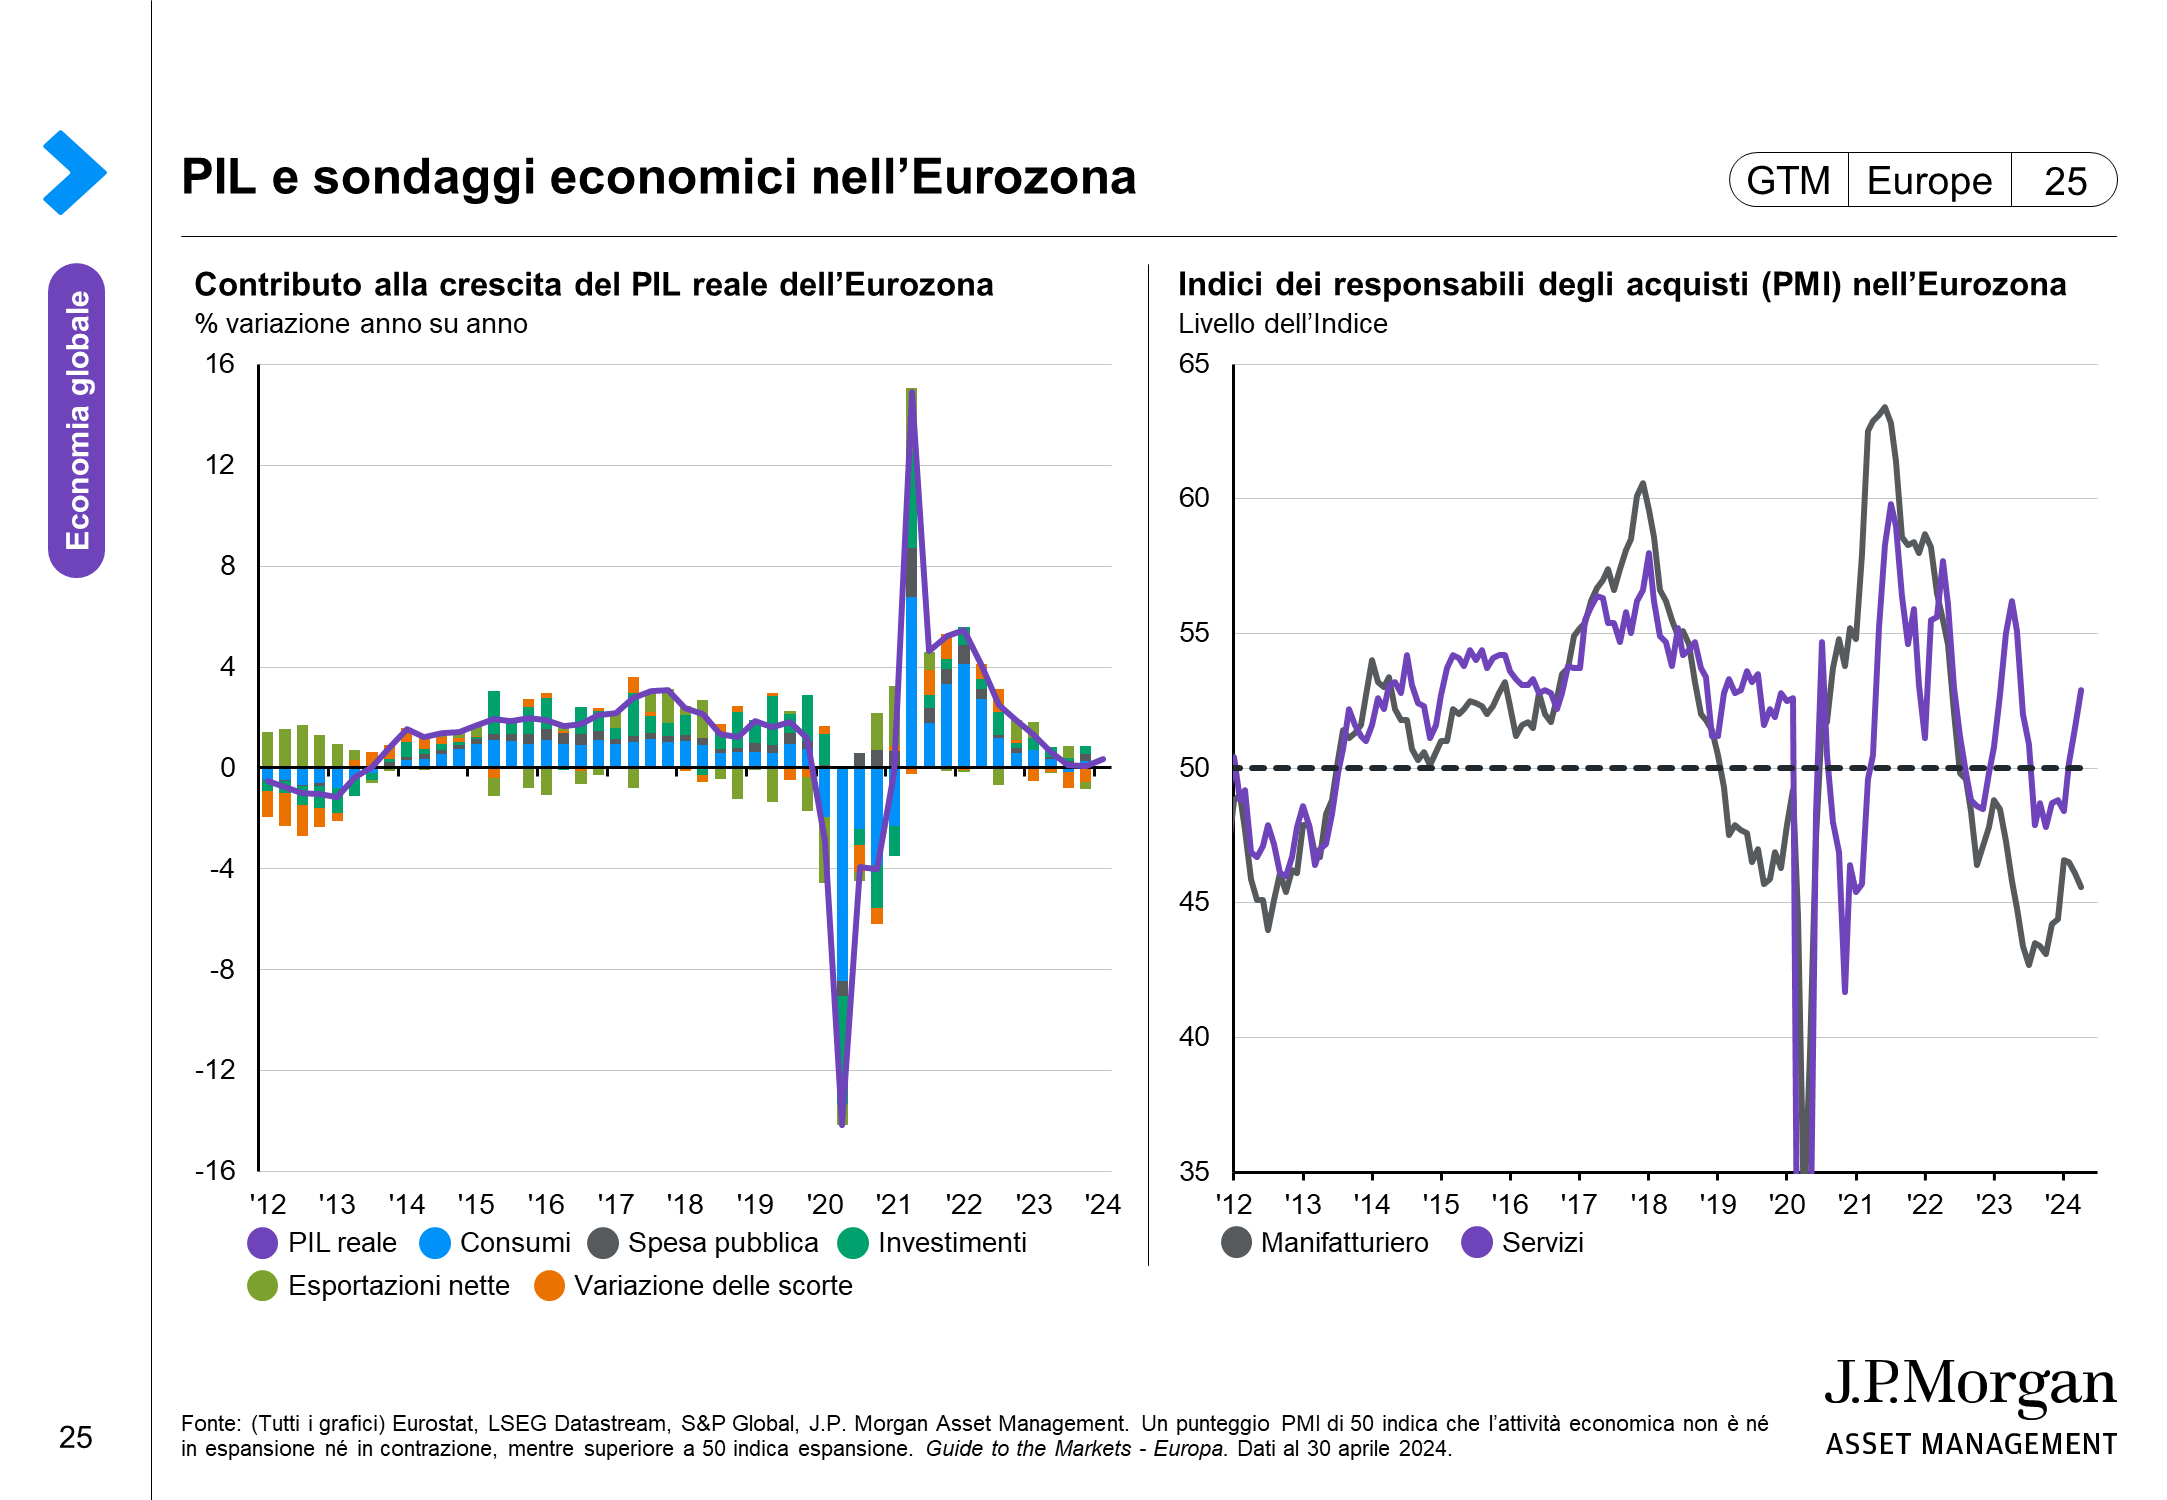 Monitoraggio delle condizioni dell’economia dell’Eurozona